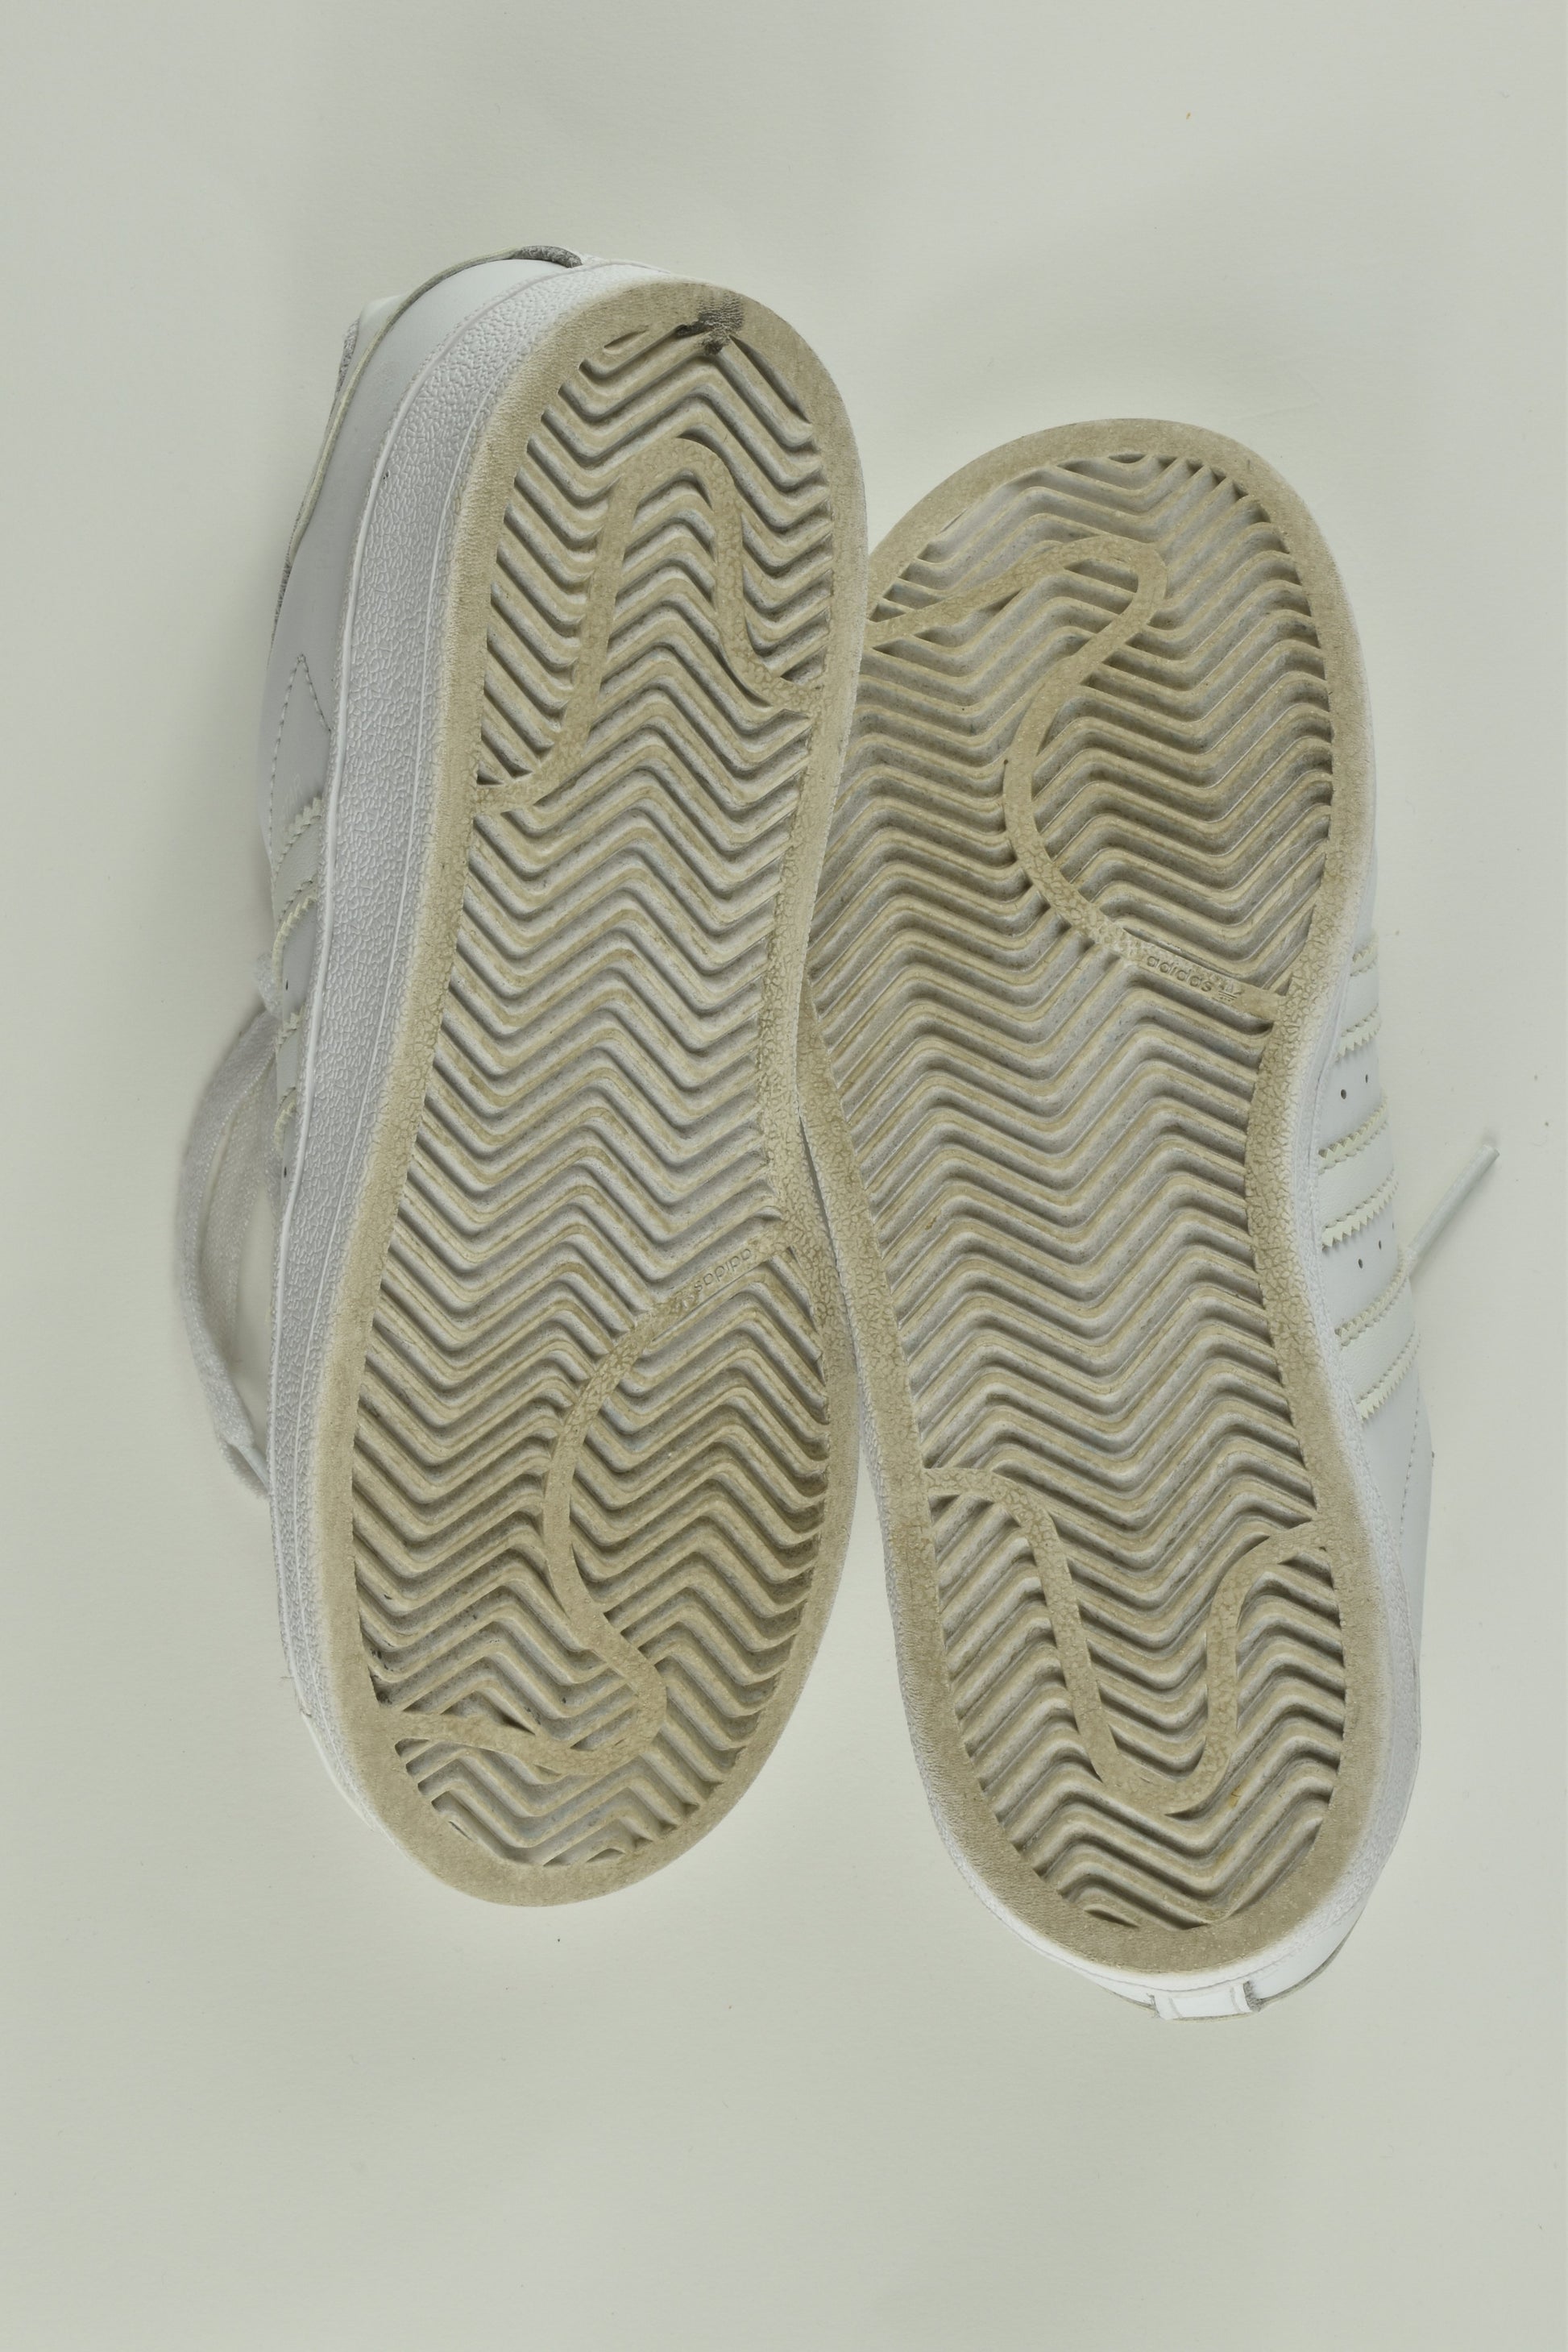 Adidas Superstar Size UK 1 White Shoes